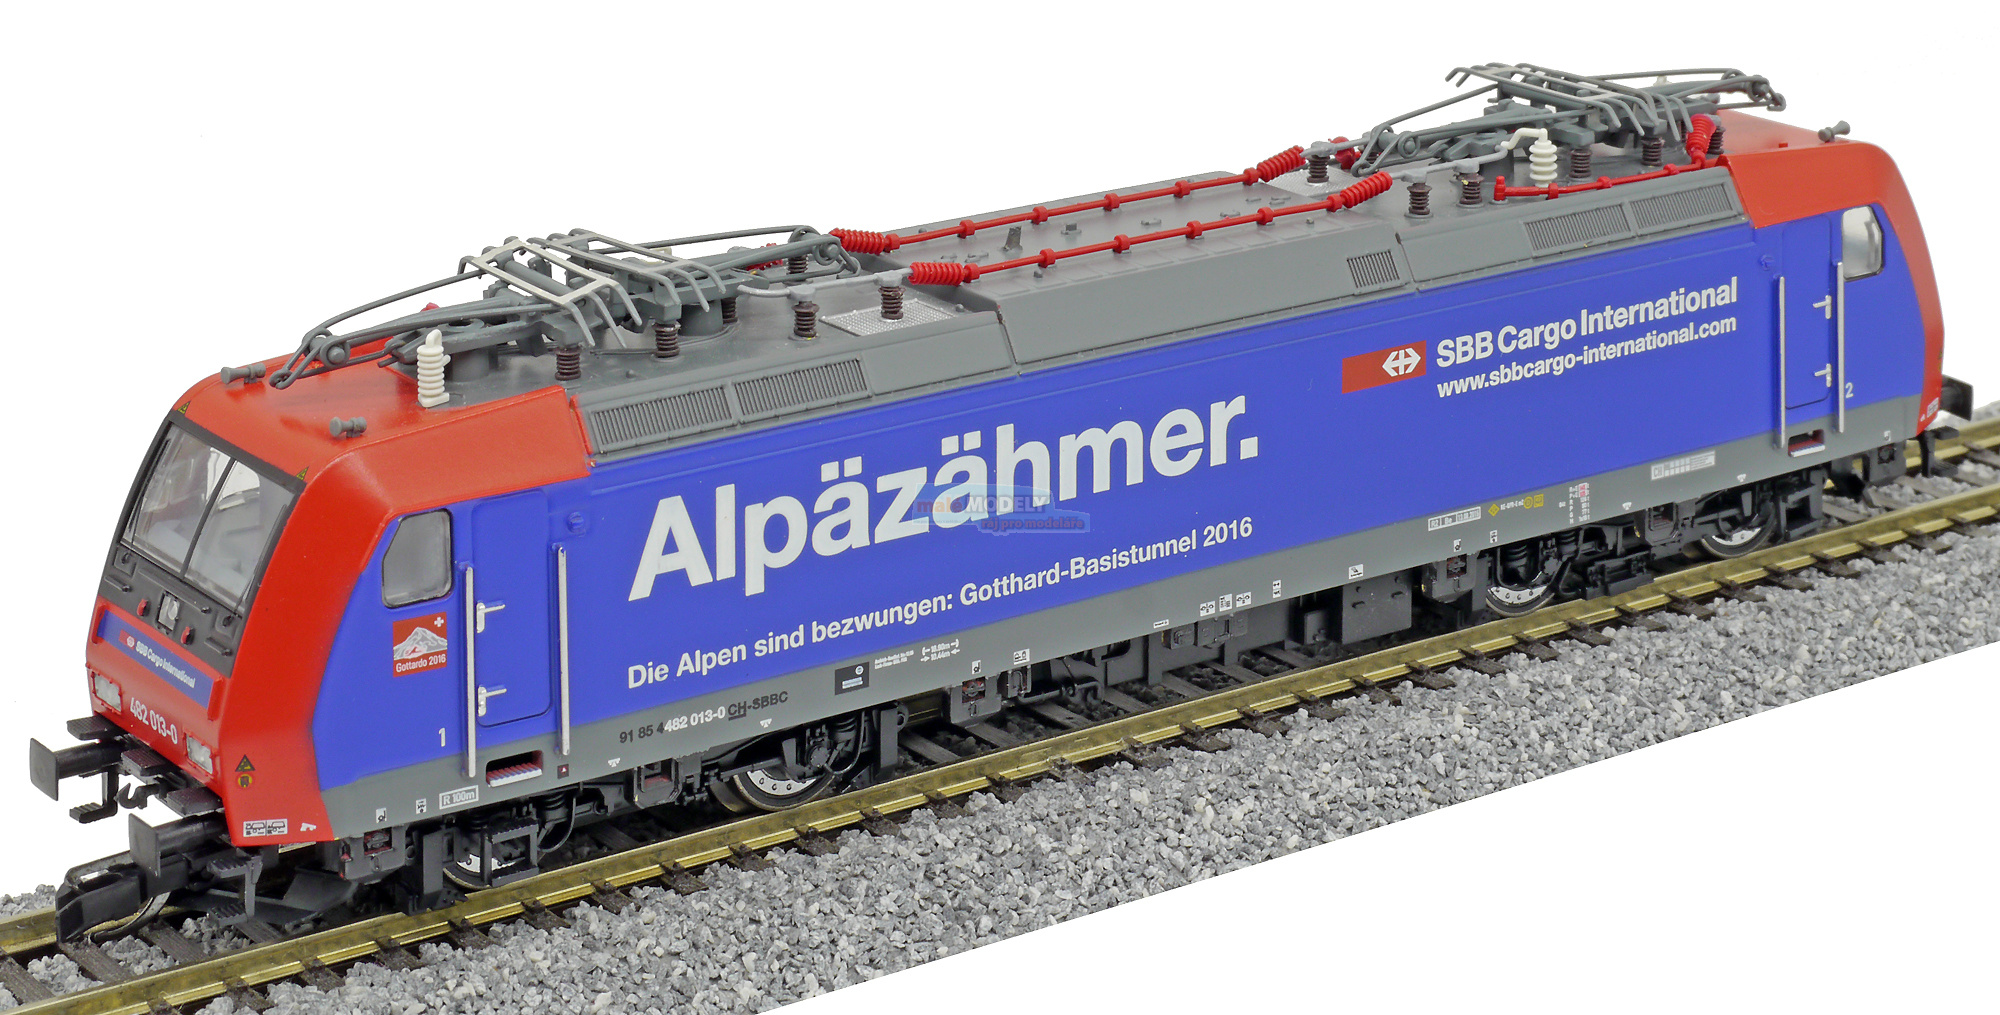 Elektrická lokomotiva RB185 (Re482) „Alpäzähmer“